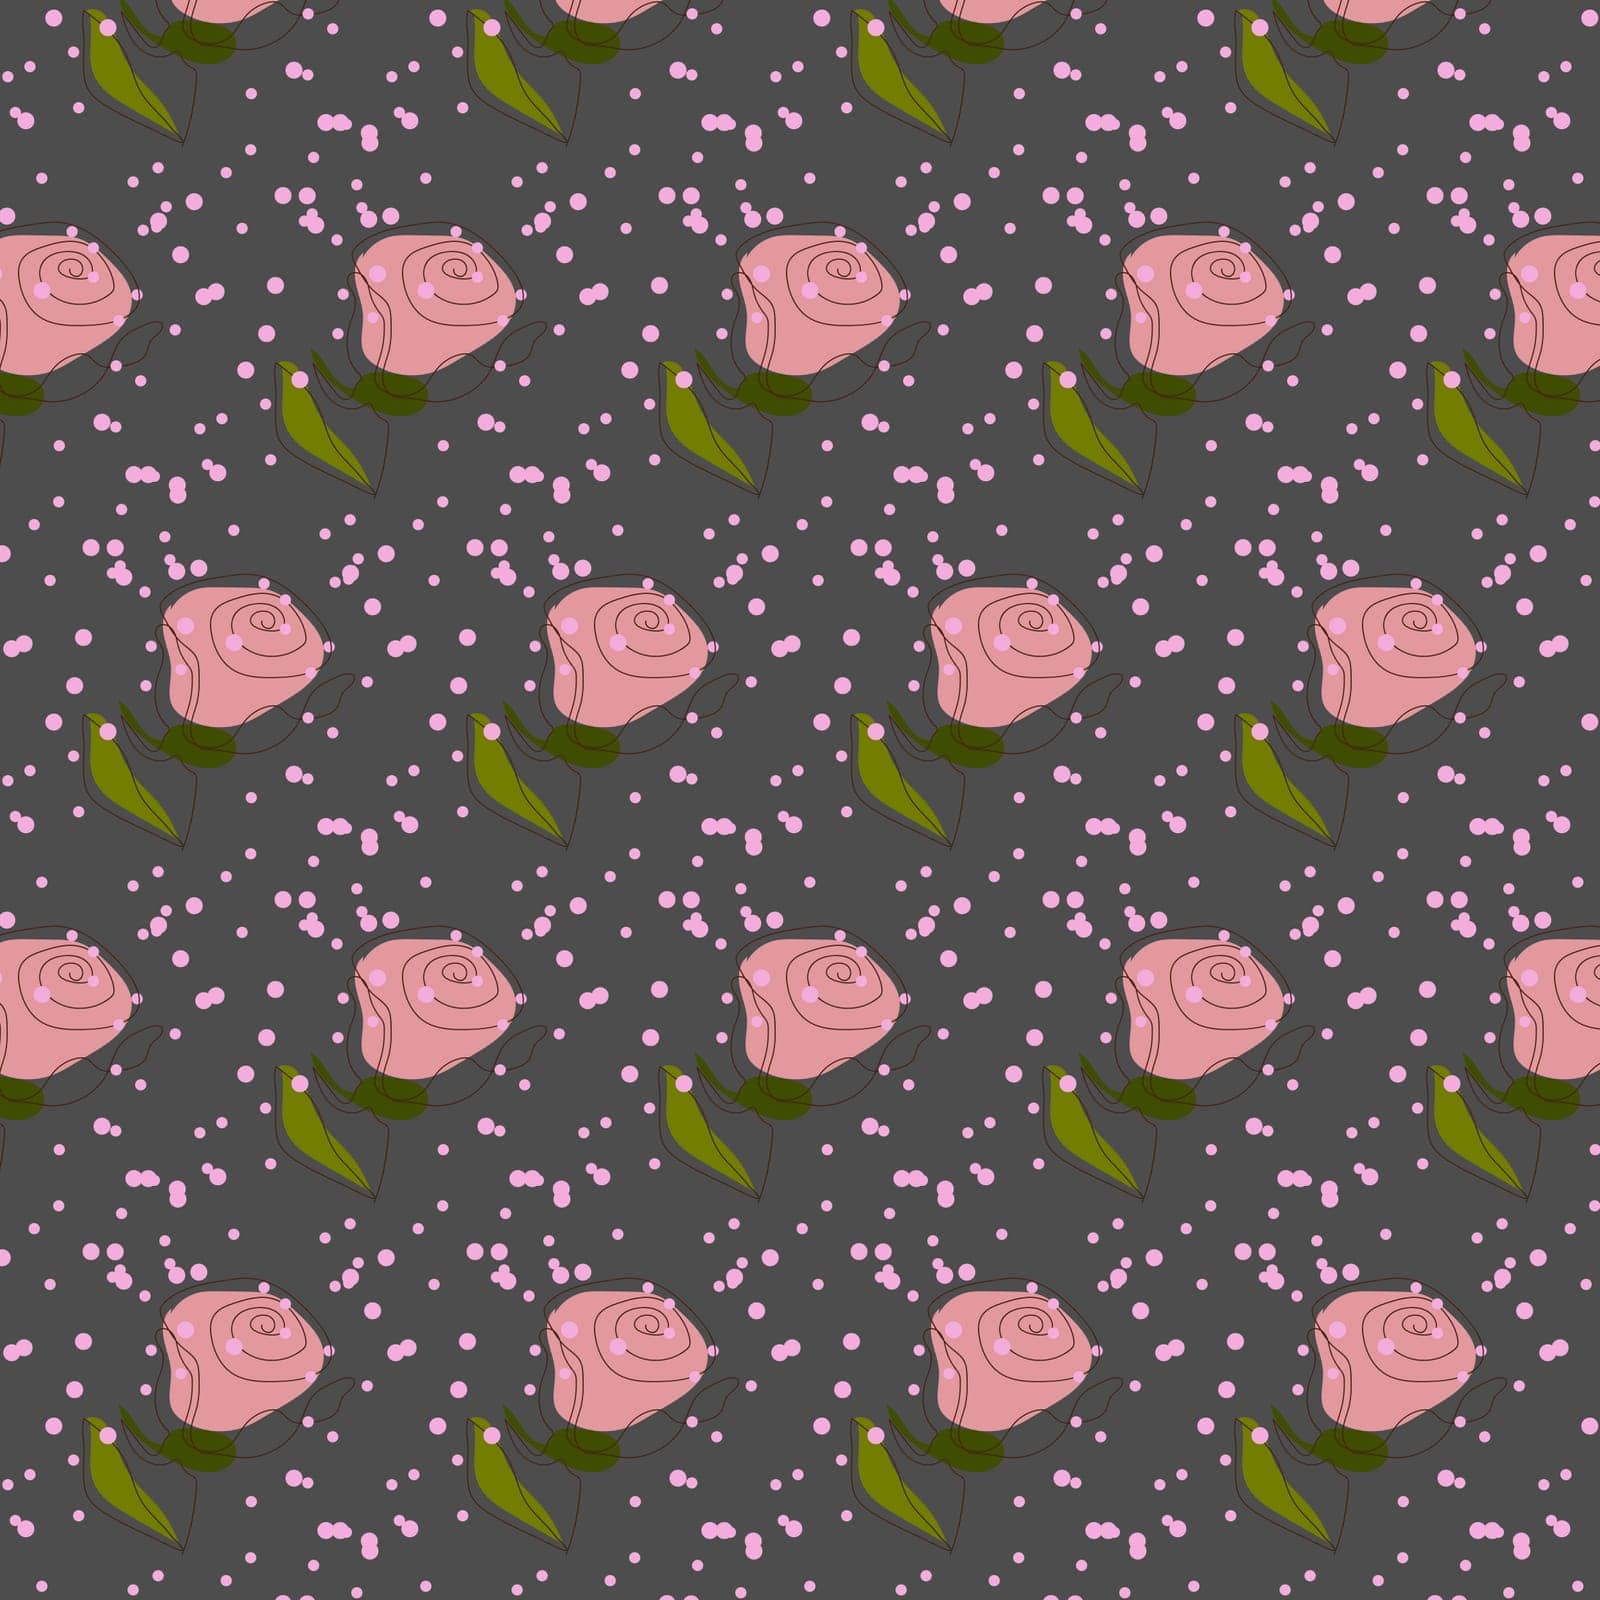 rose pattern on gray by Veranikas